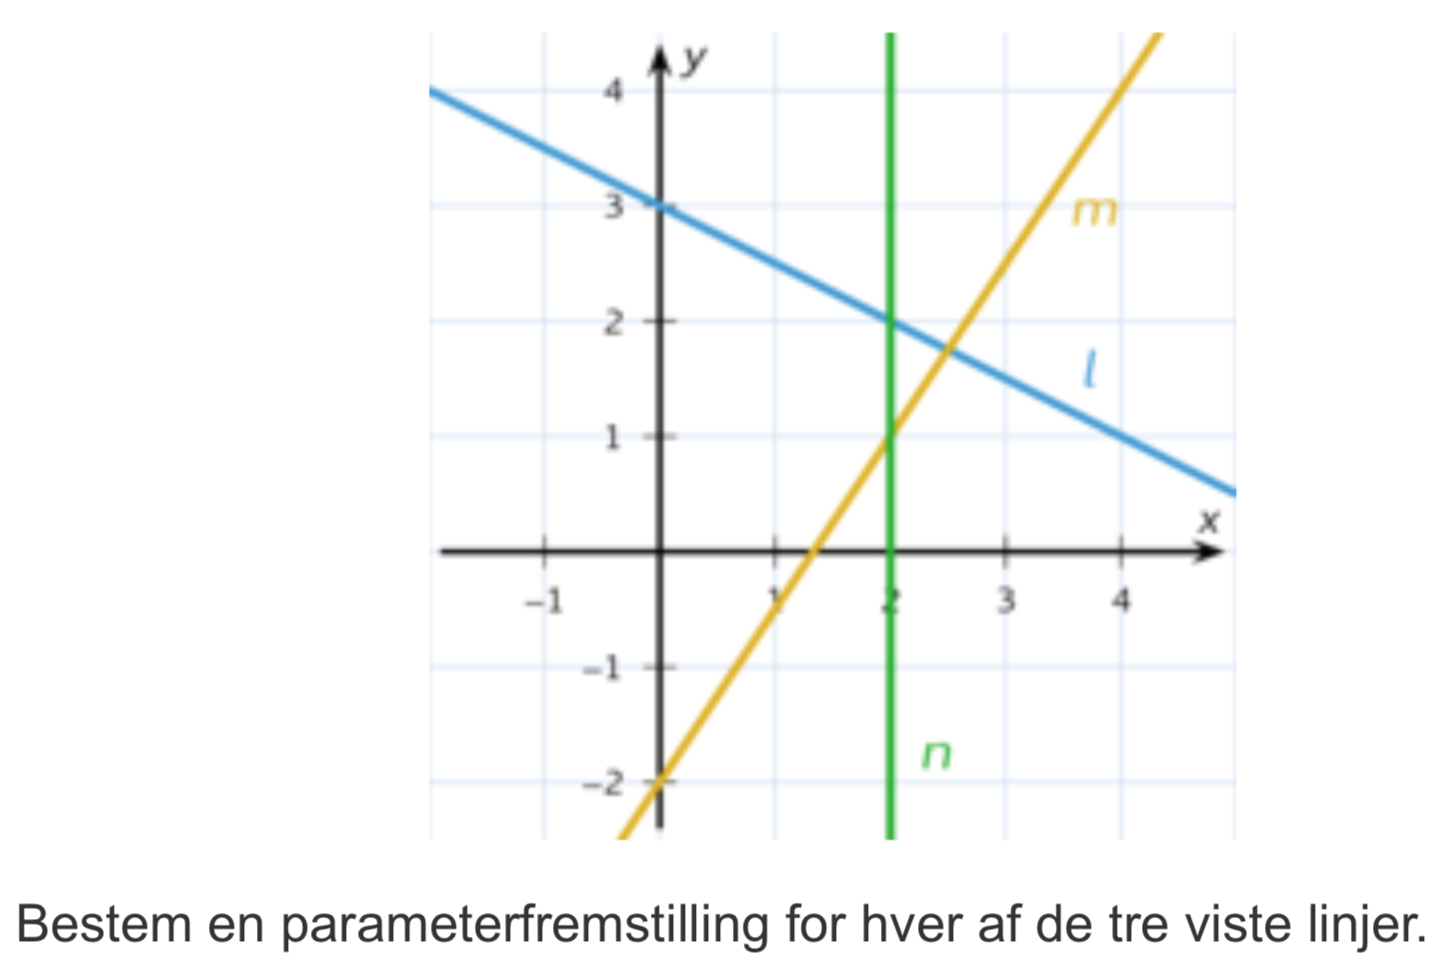 Opskrive parameterfremstilling ud fra Hvad kendes - Matematik - Studieportalen.dk